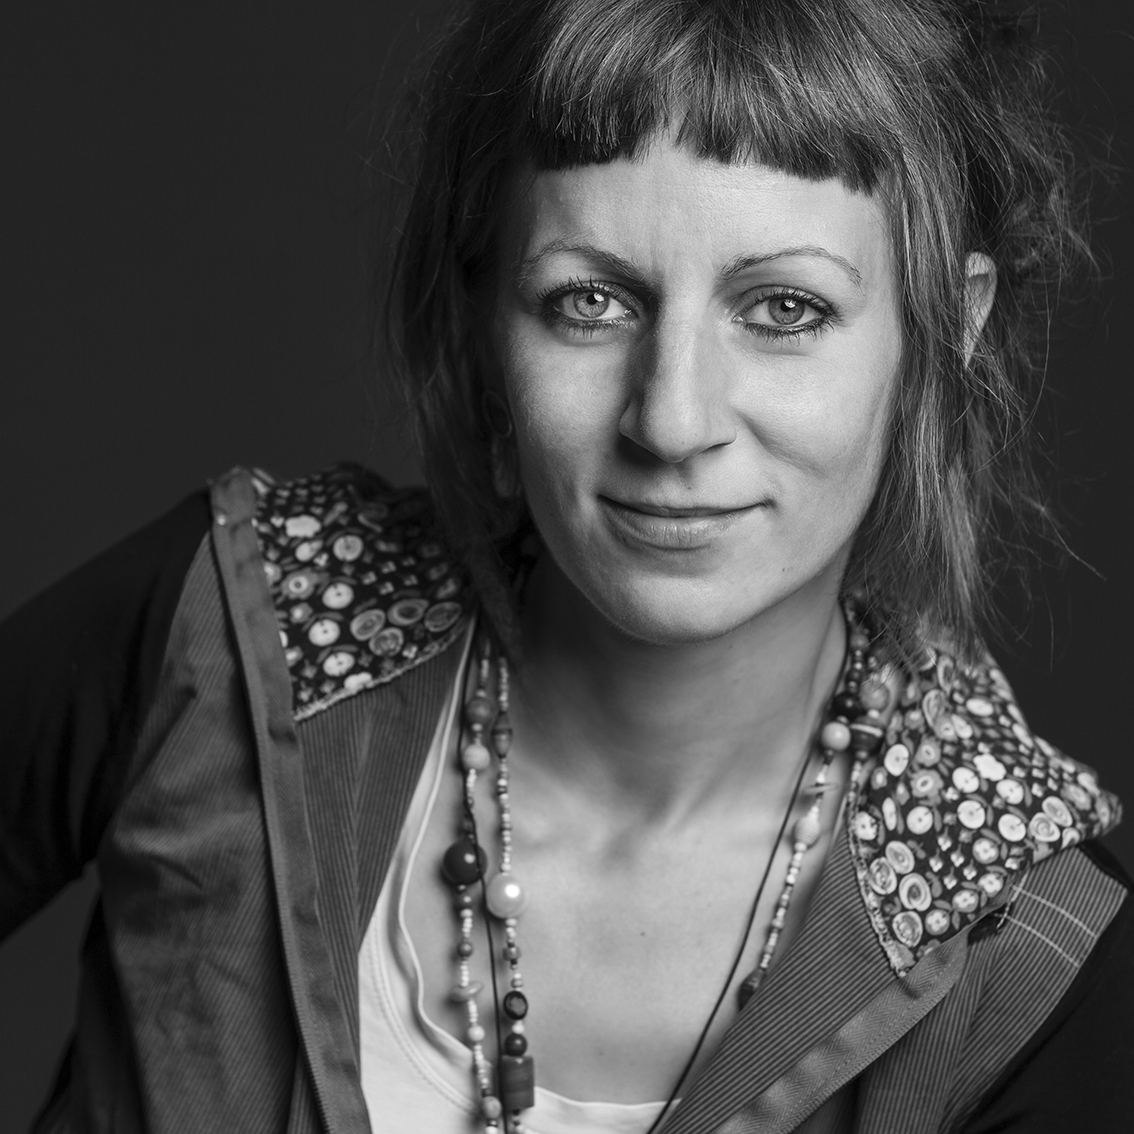 Ein Porträt der Kursleiterin Elena Pisi in schwarz-weiß